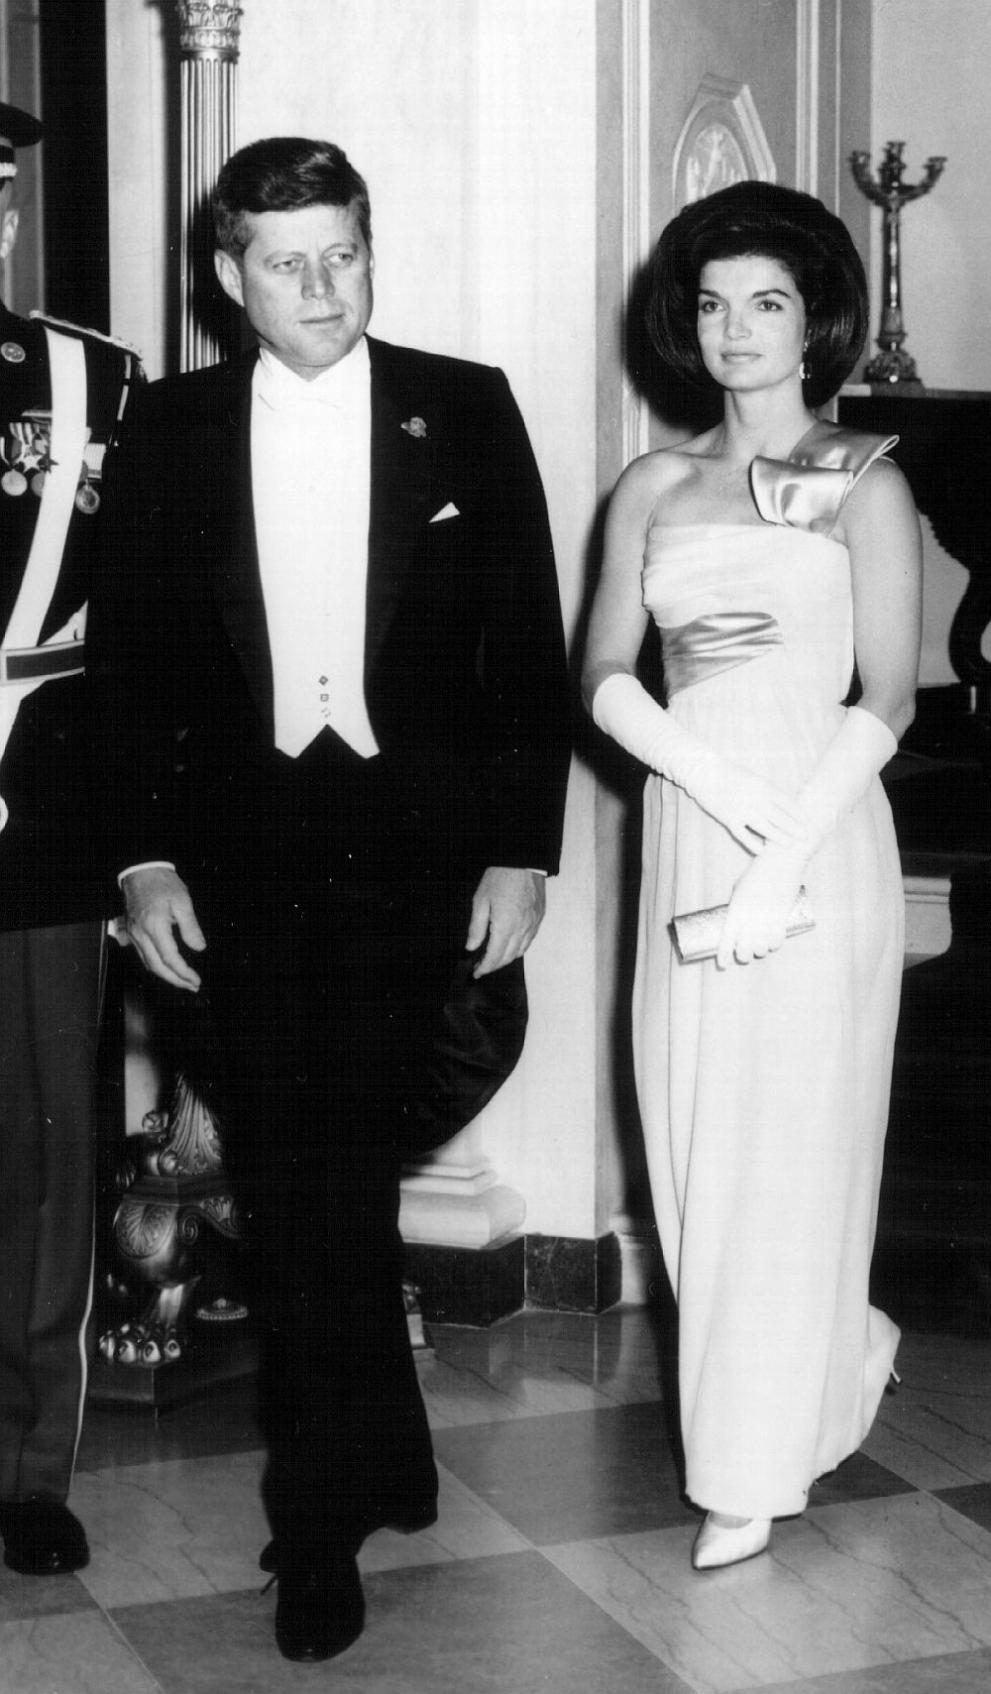  35-ият президент на Съединени американски щати Джон Ф. Кенеди 